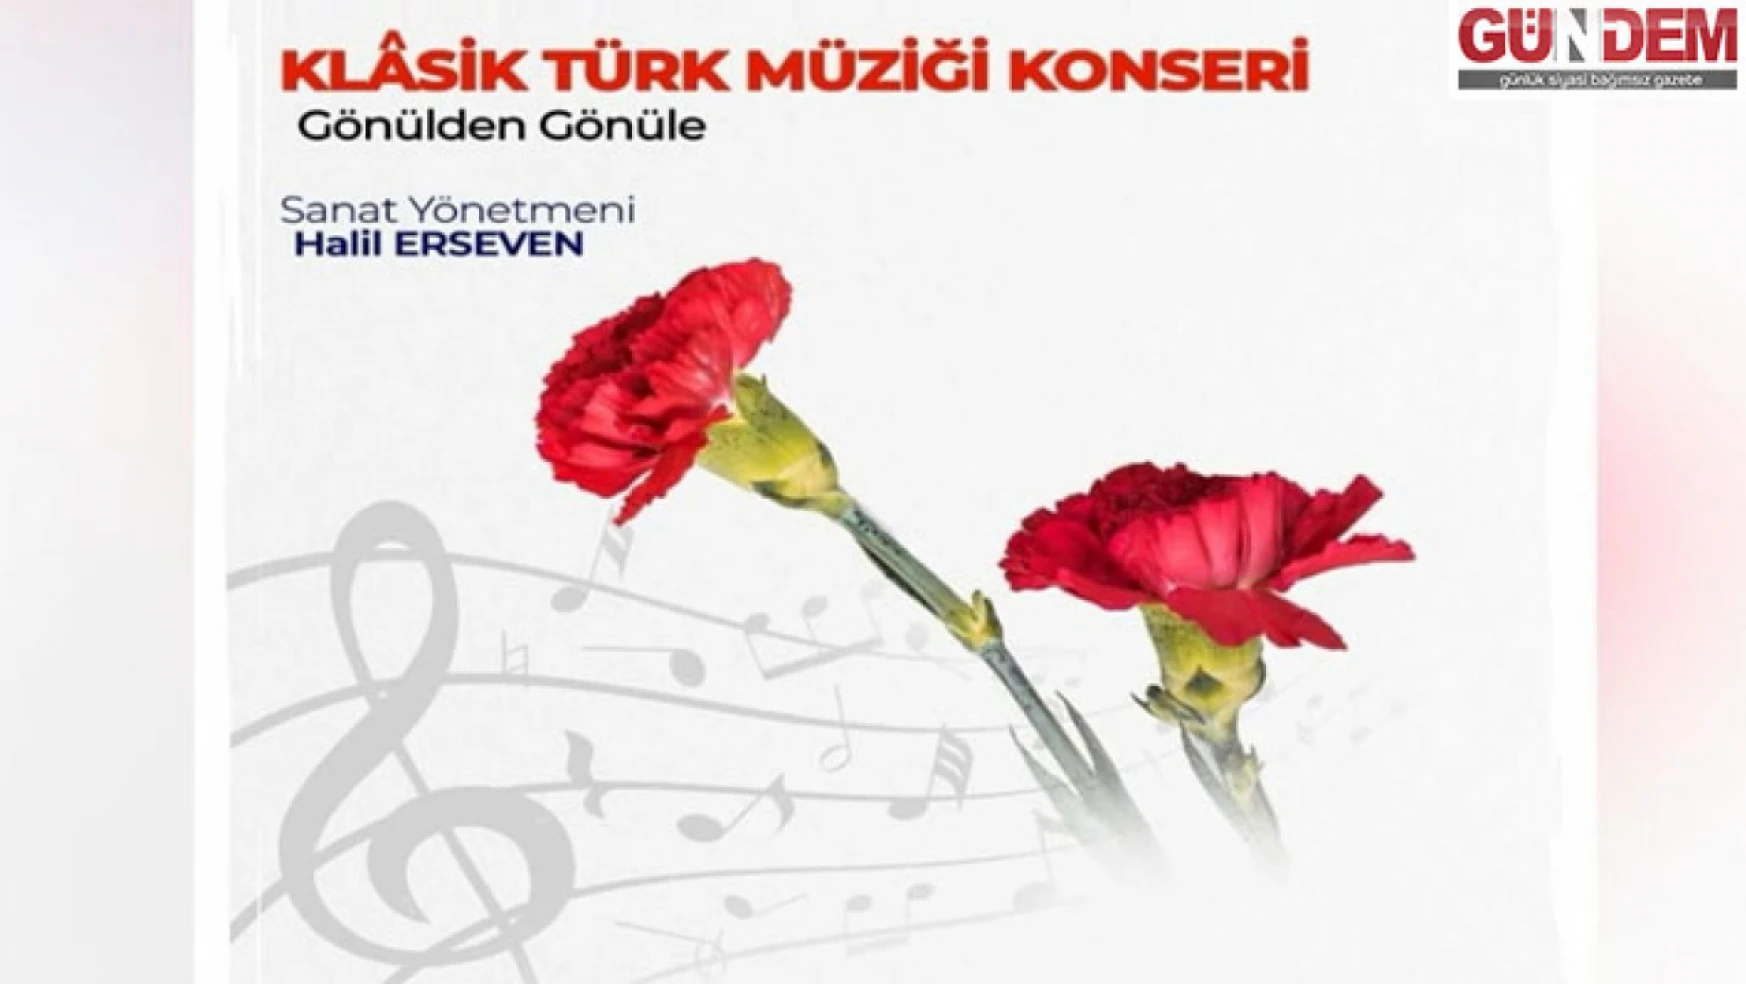 Klasik Türk Müziği konseri düzenlenecek